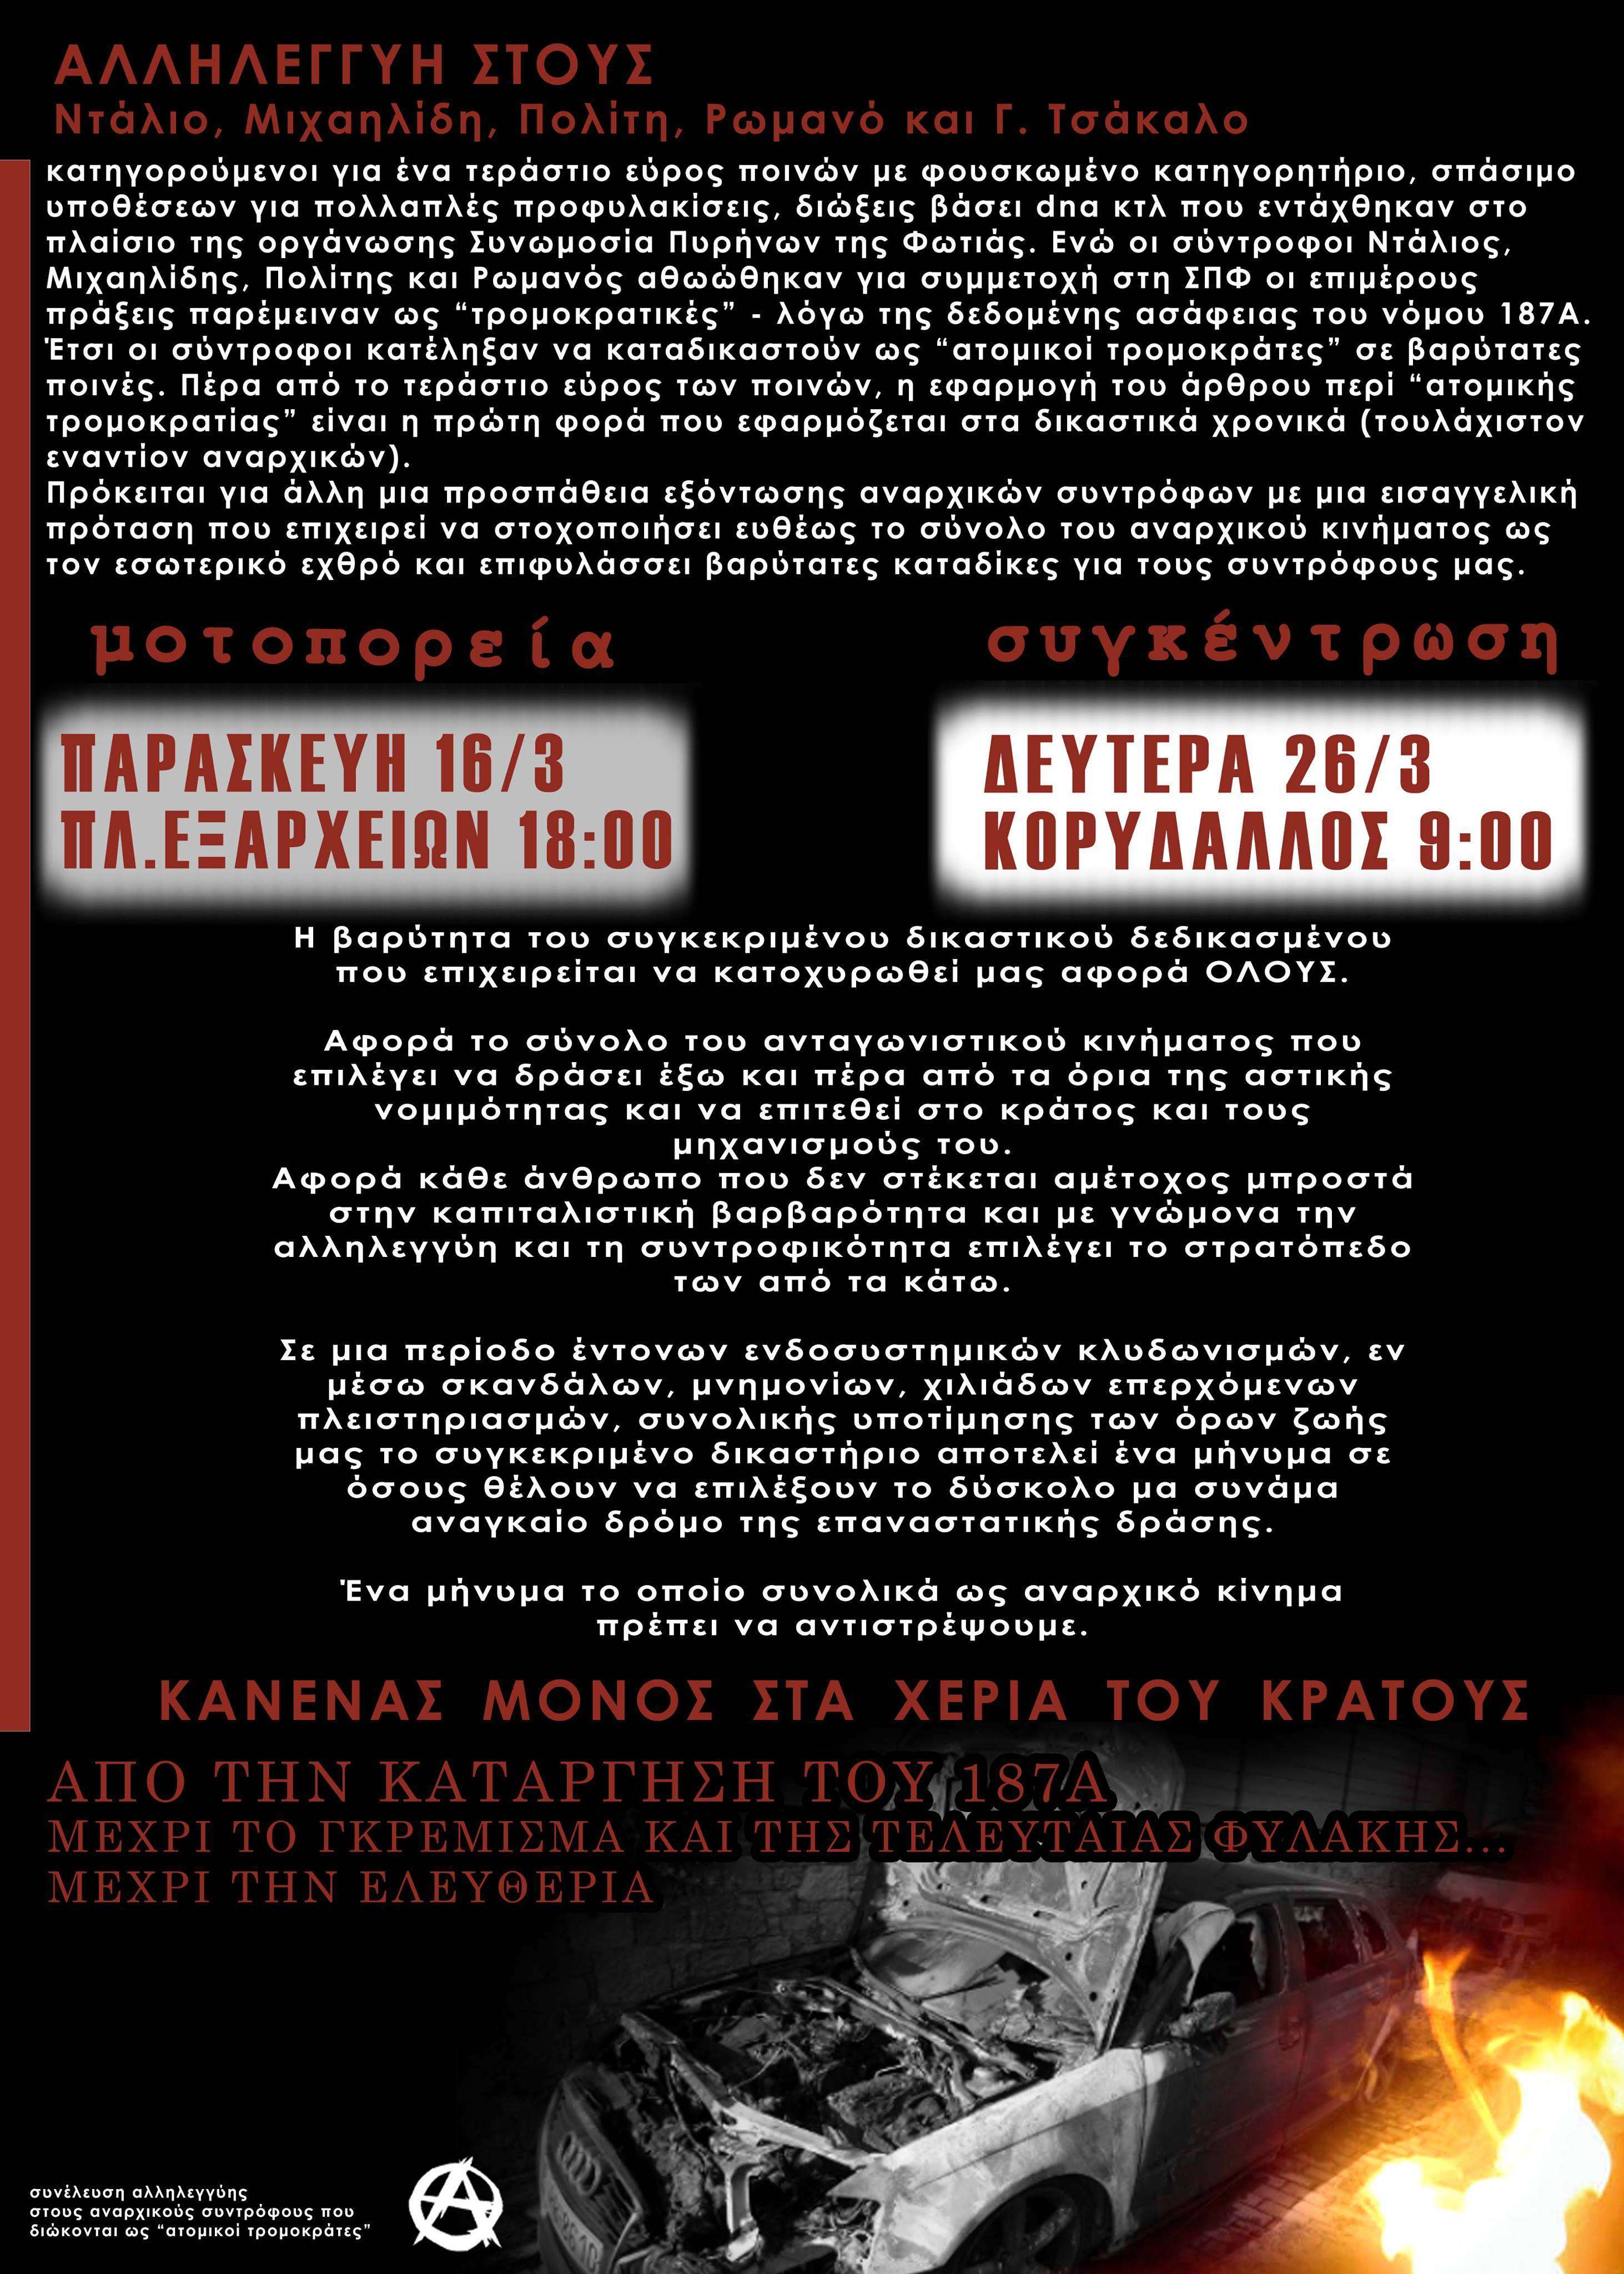 Αθήνα: Μοτοπορεία αλληλεγγύης στους αναρχικούς συντρόφους που διώκονται ως “ατομικοί τρομοκράτες” [Παρασκευή 16/03, 18:00]